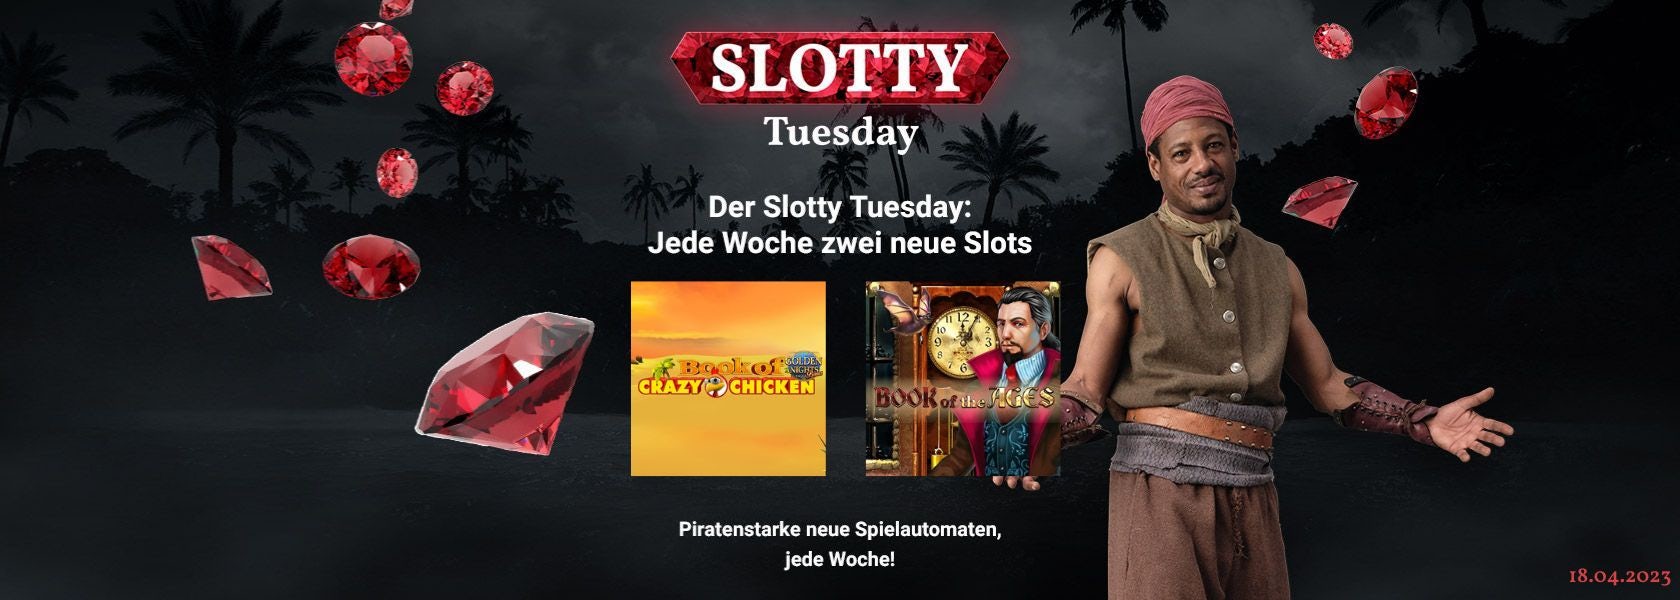 JPI-Header-Slotty-Tuesday-1804